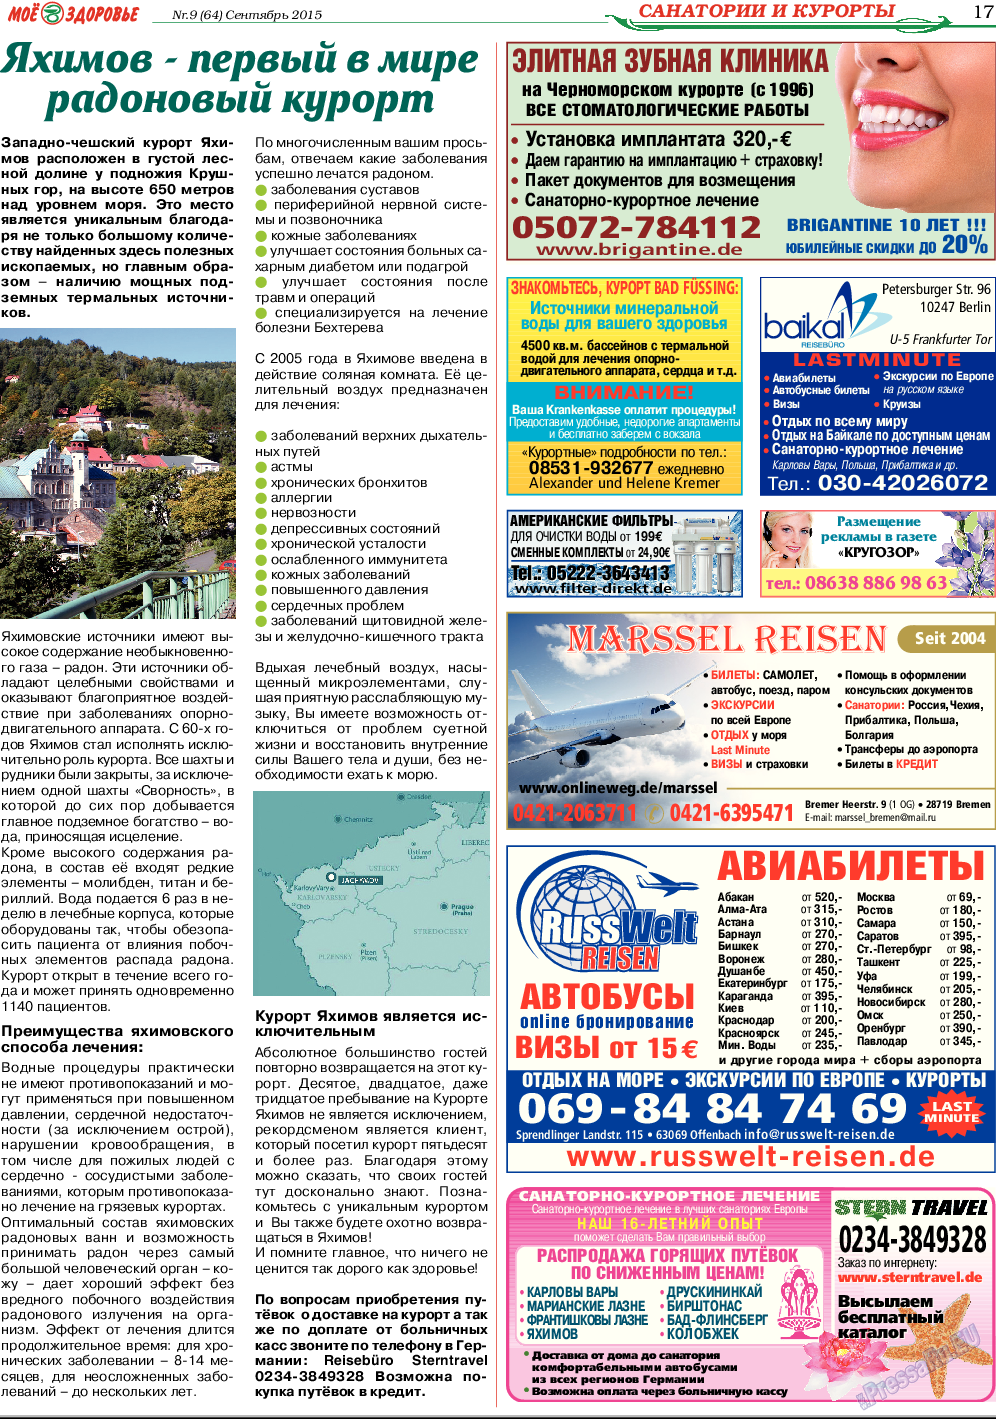 Кругозор (газета). 2015 год, номер 9, стр. 17